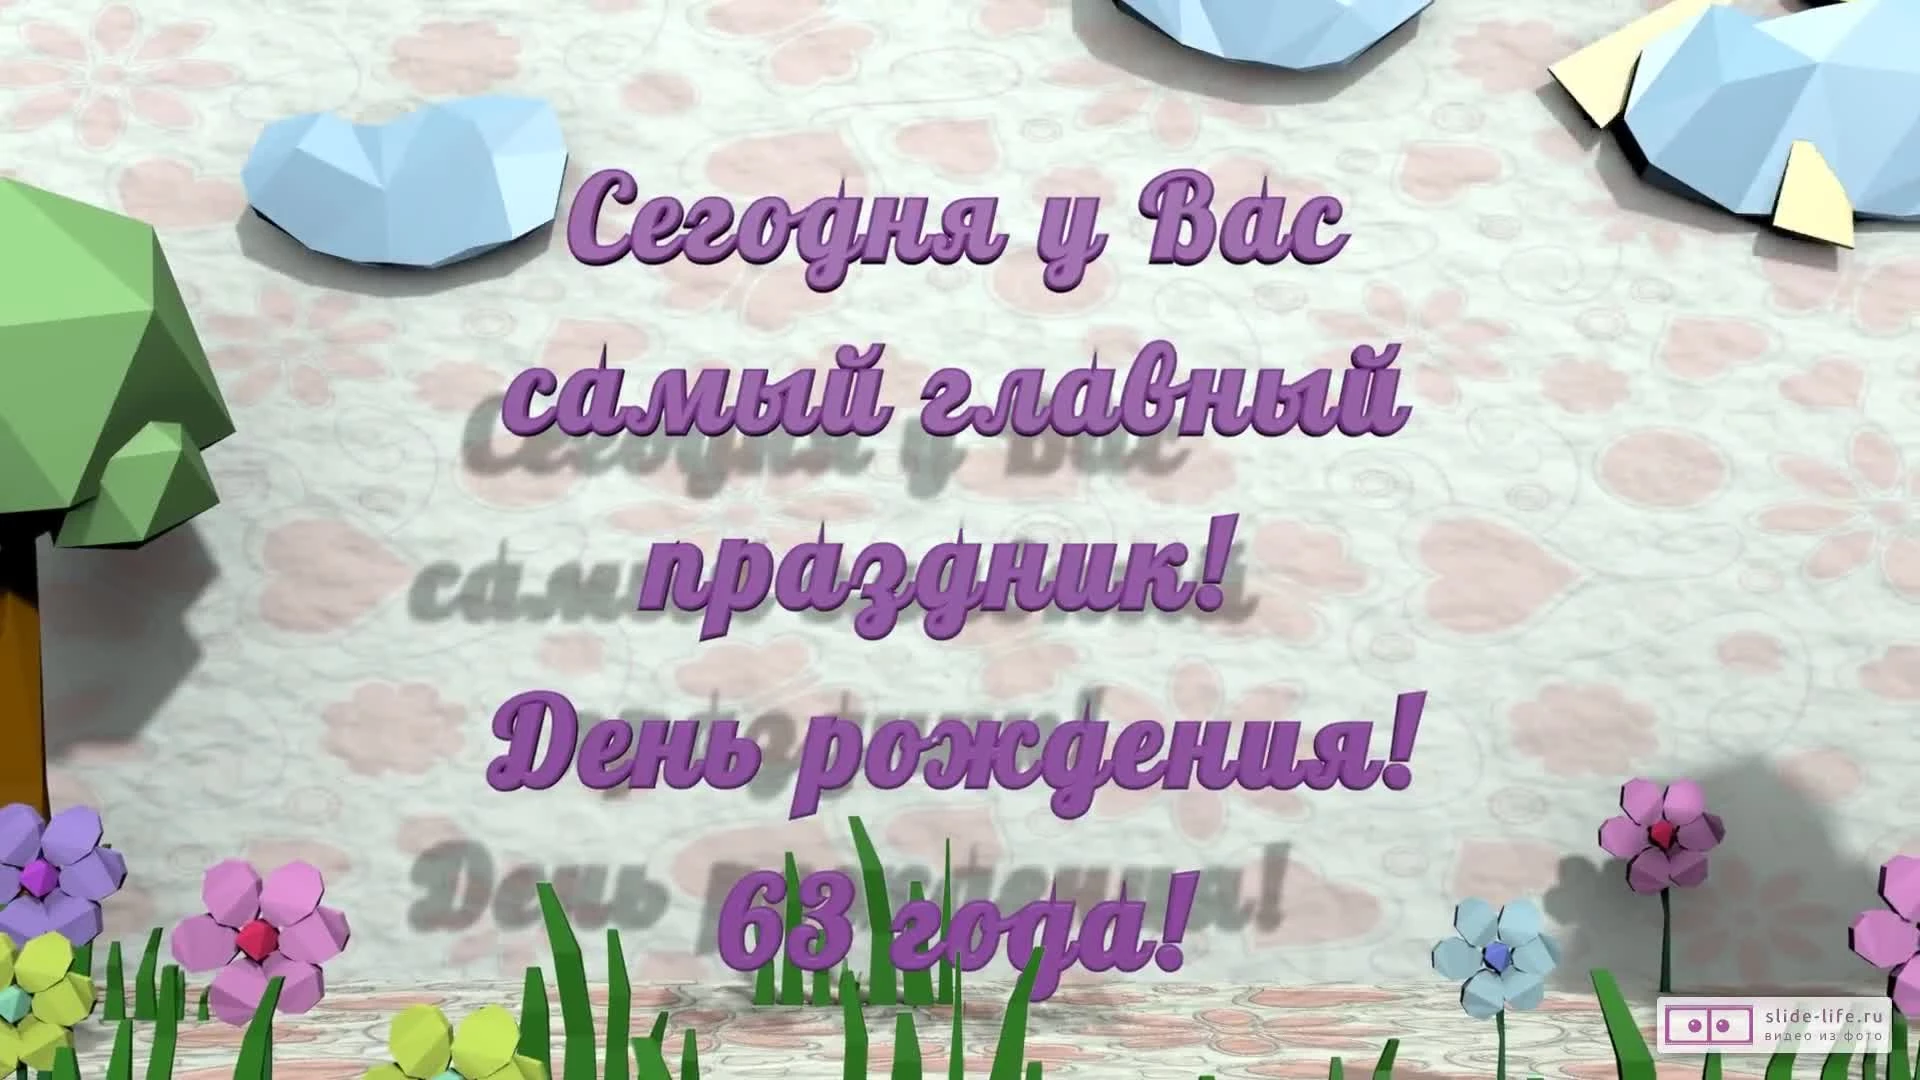 Стильное видео поздравление с днем рождения мужчине 63 года — Slide-Life.ru